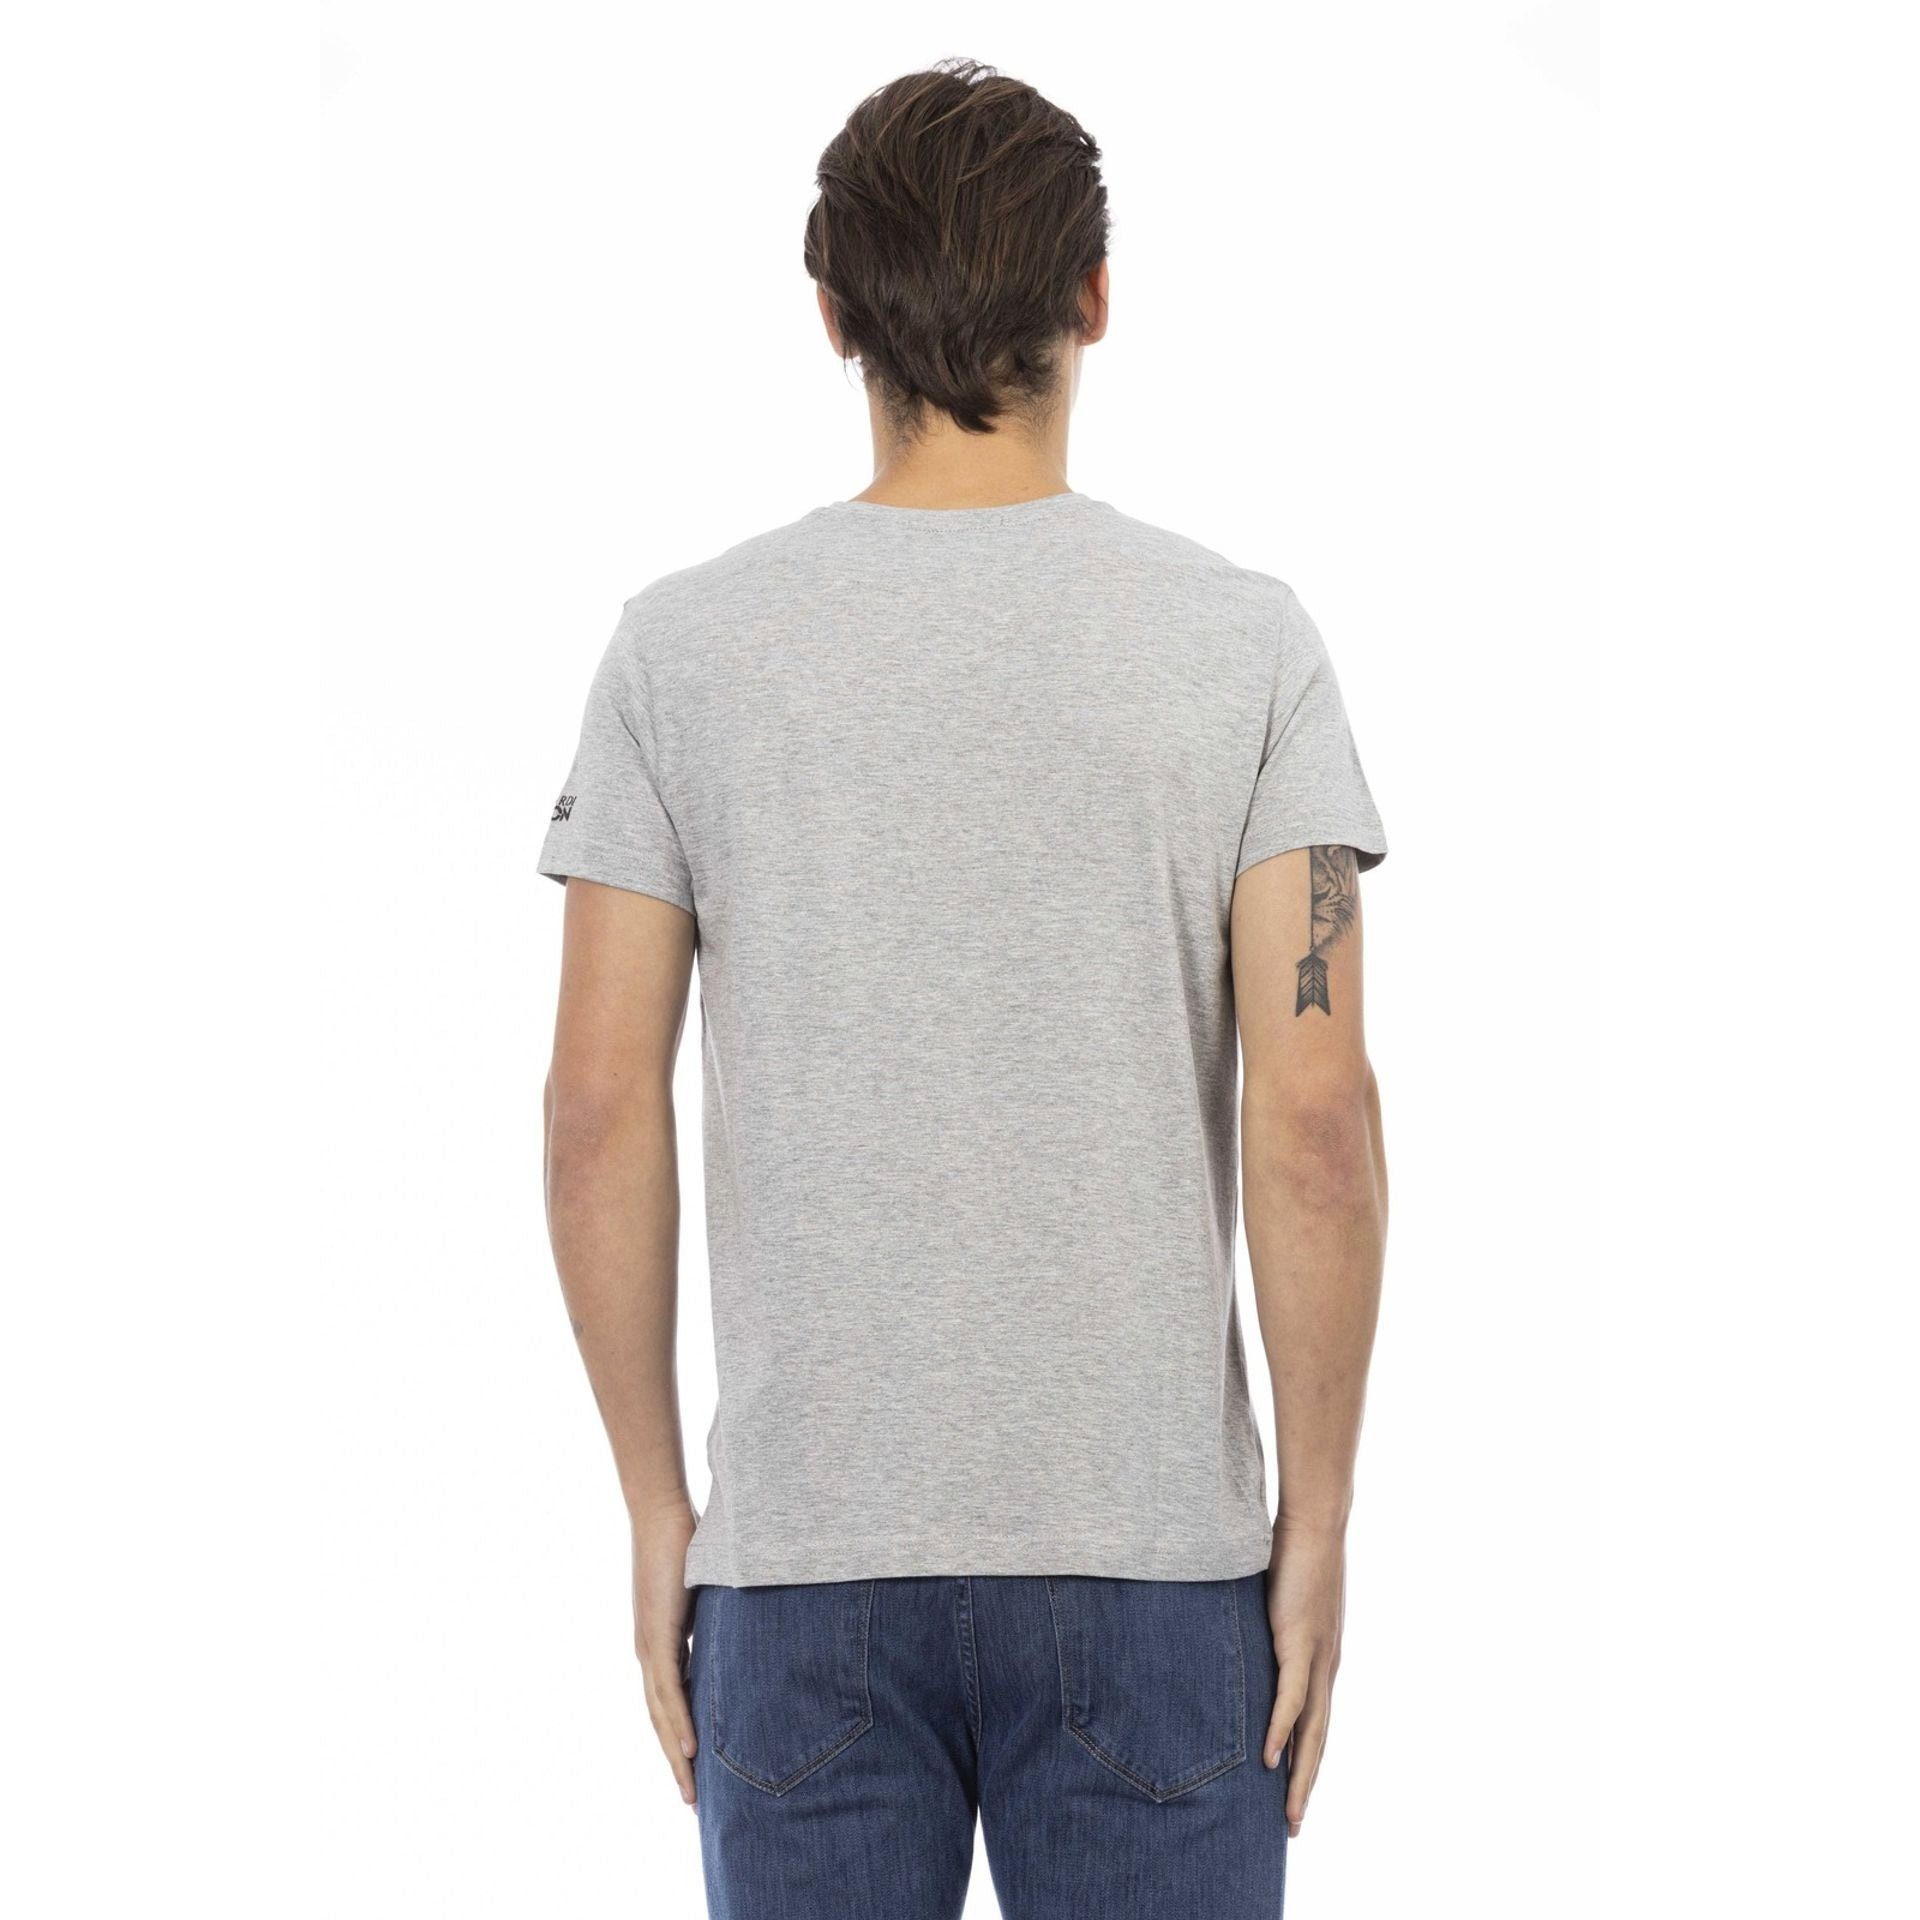 Trussardi T-Shirt Trussardi Action T-Shirts, das Logo-Muster subtile, das durch verleiht aber aus, zeichnet eine Note Grau sich stilvolle Es